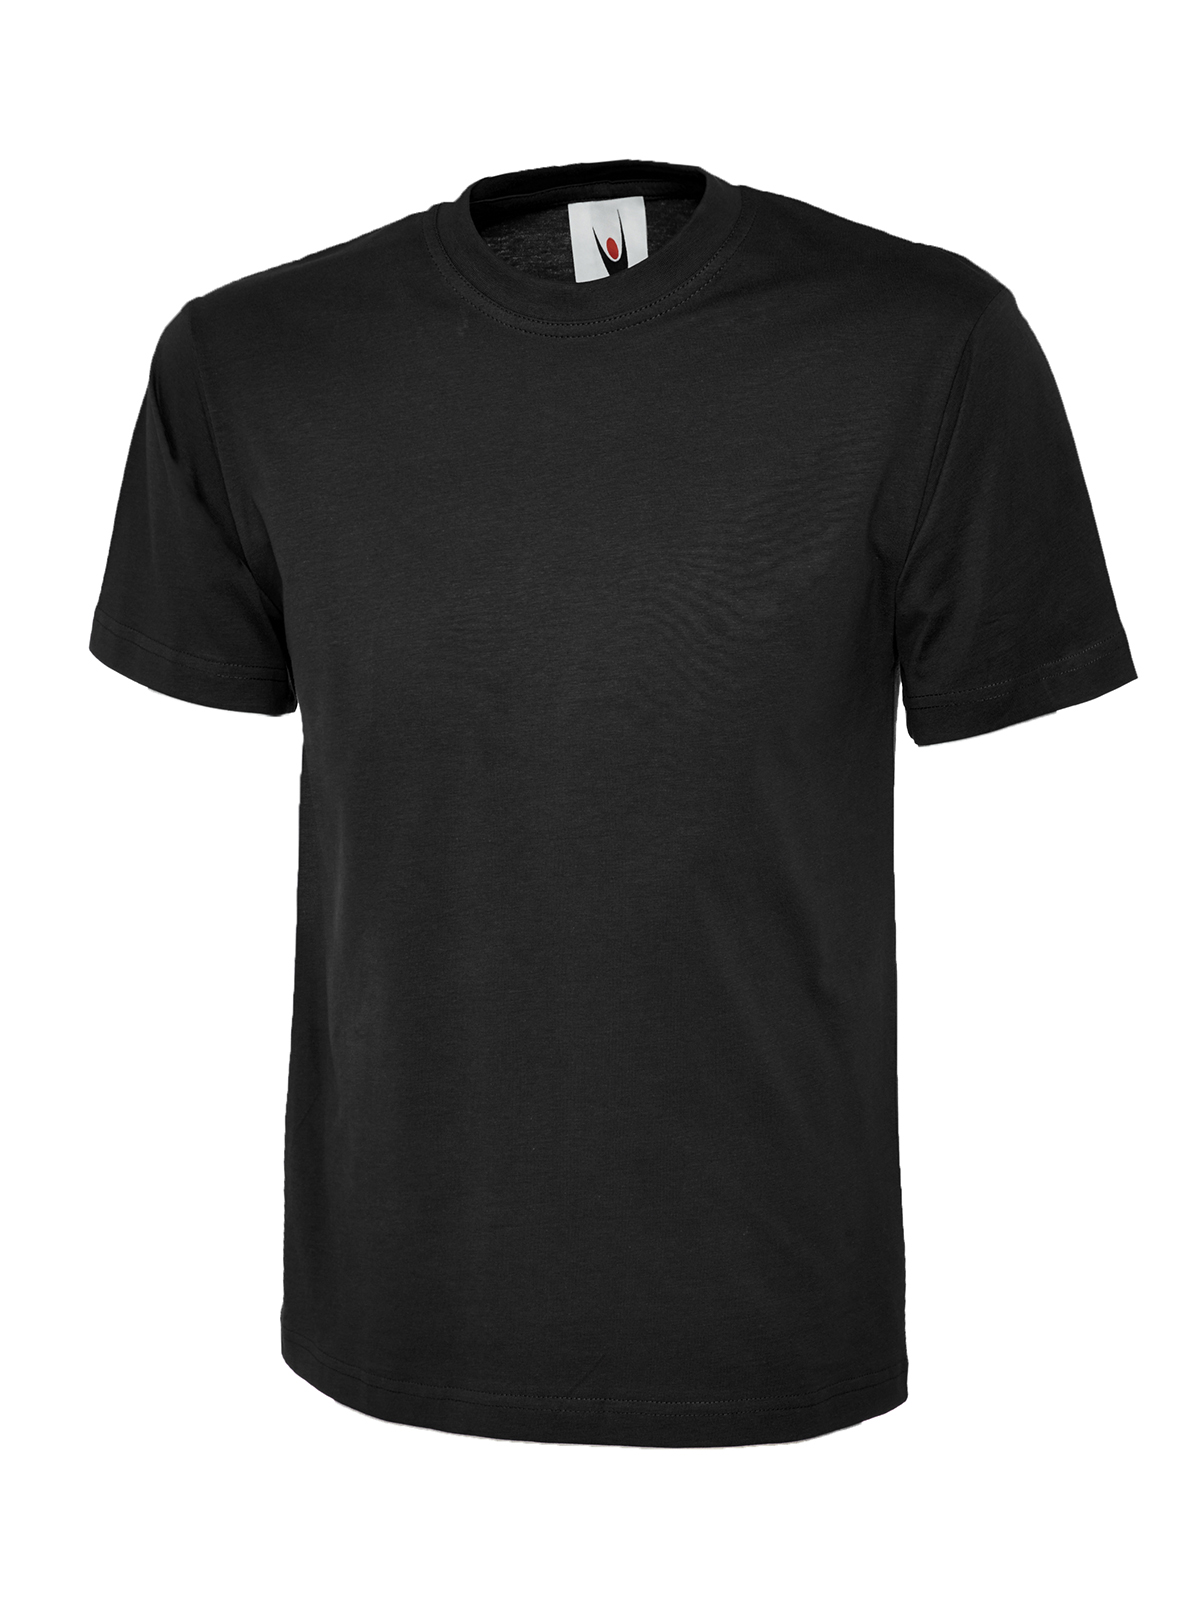 Uc301 180gsm classic t-shirt - black - xl